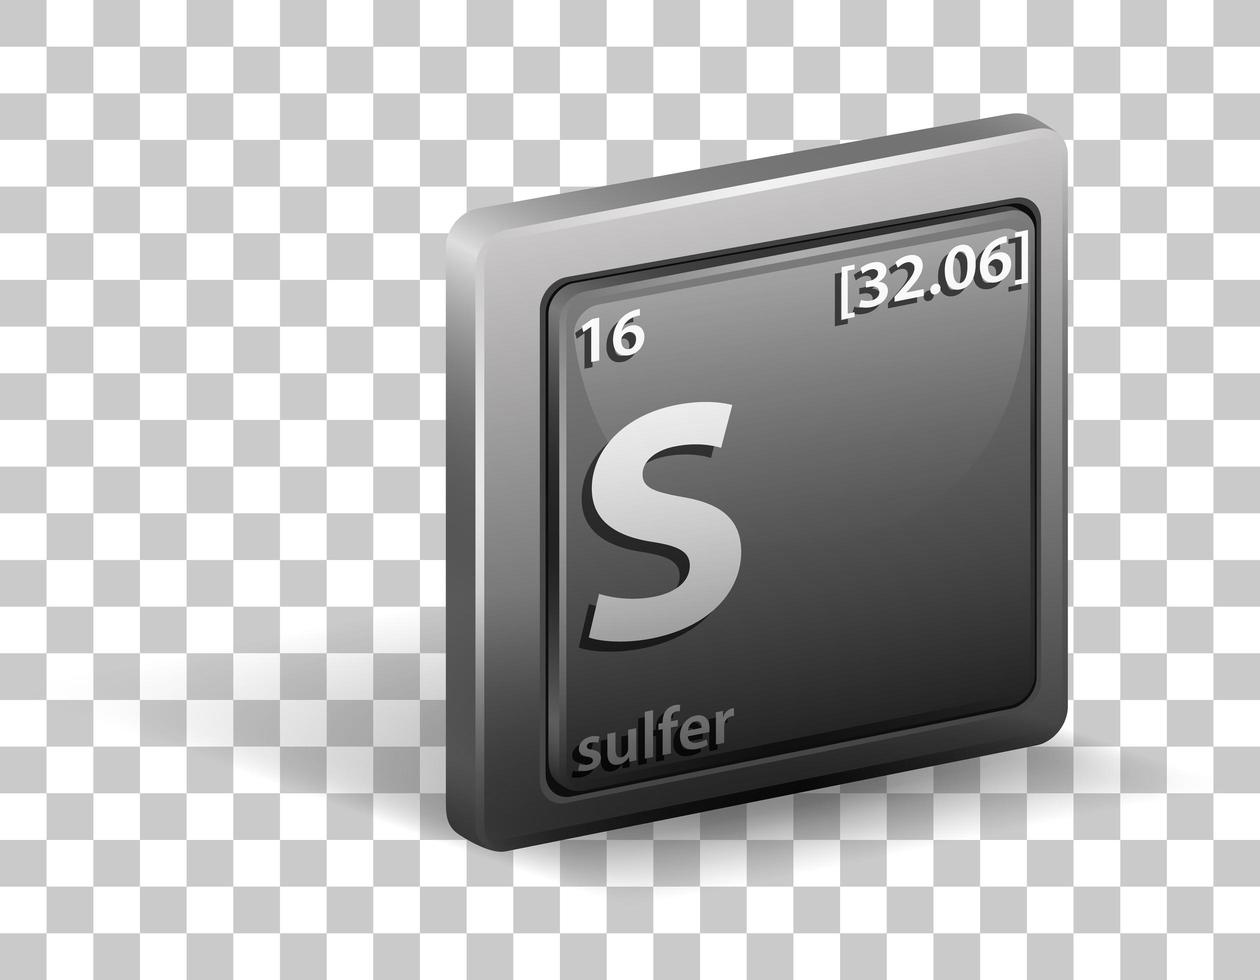 elemento químico sulfuroso. símbolo químico com número atômico e massa atômica. vetor